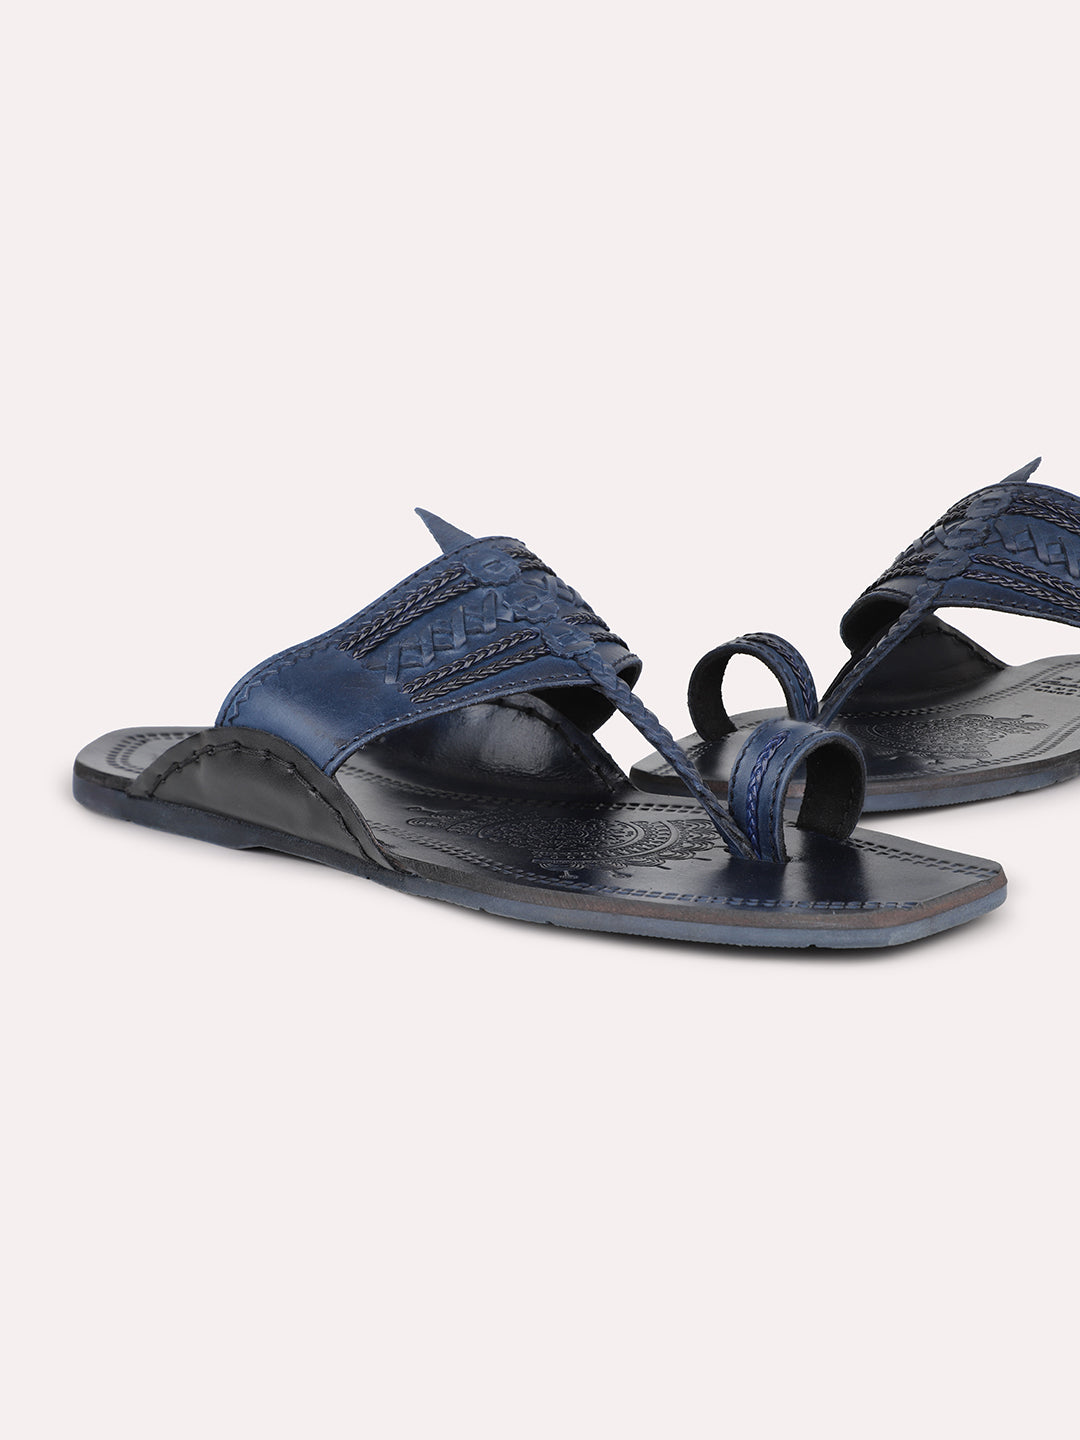 Privo Blue Kolhapuris Sandal for Men